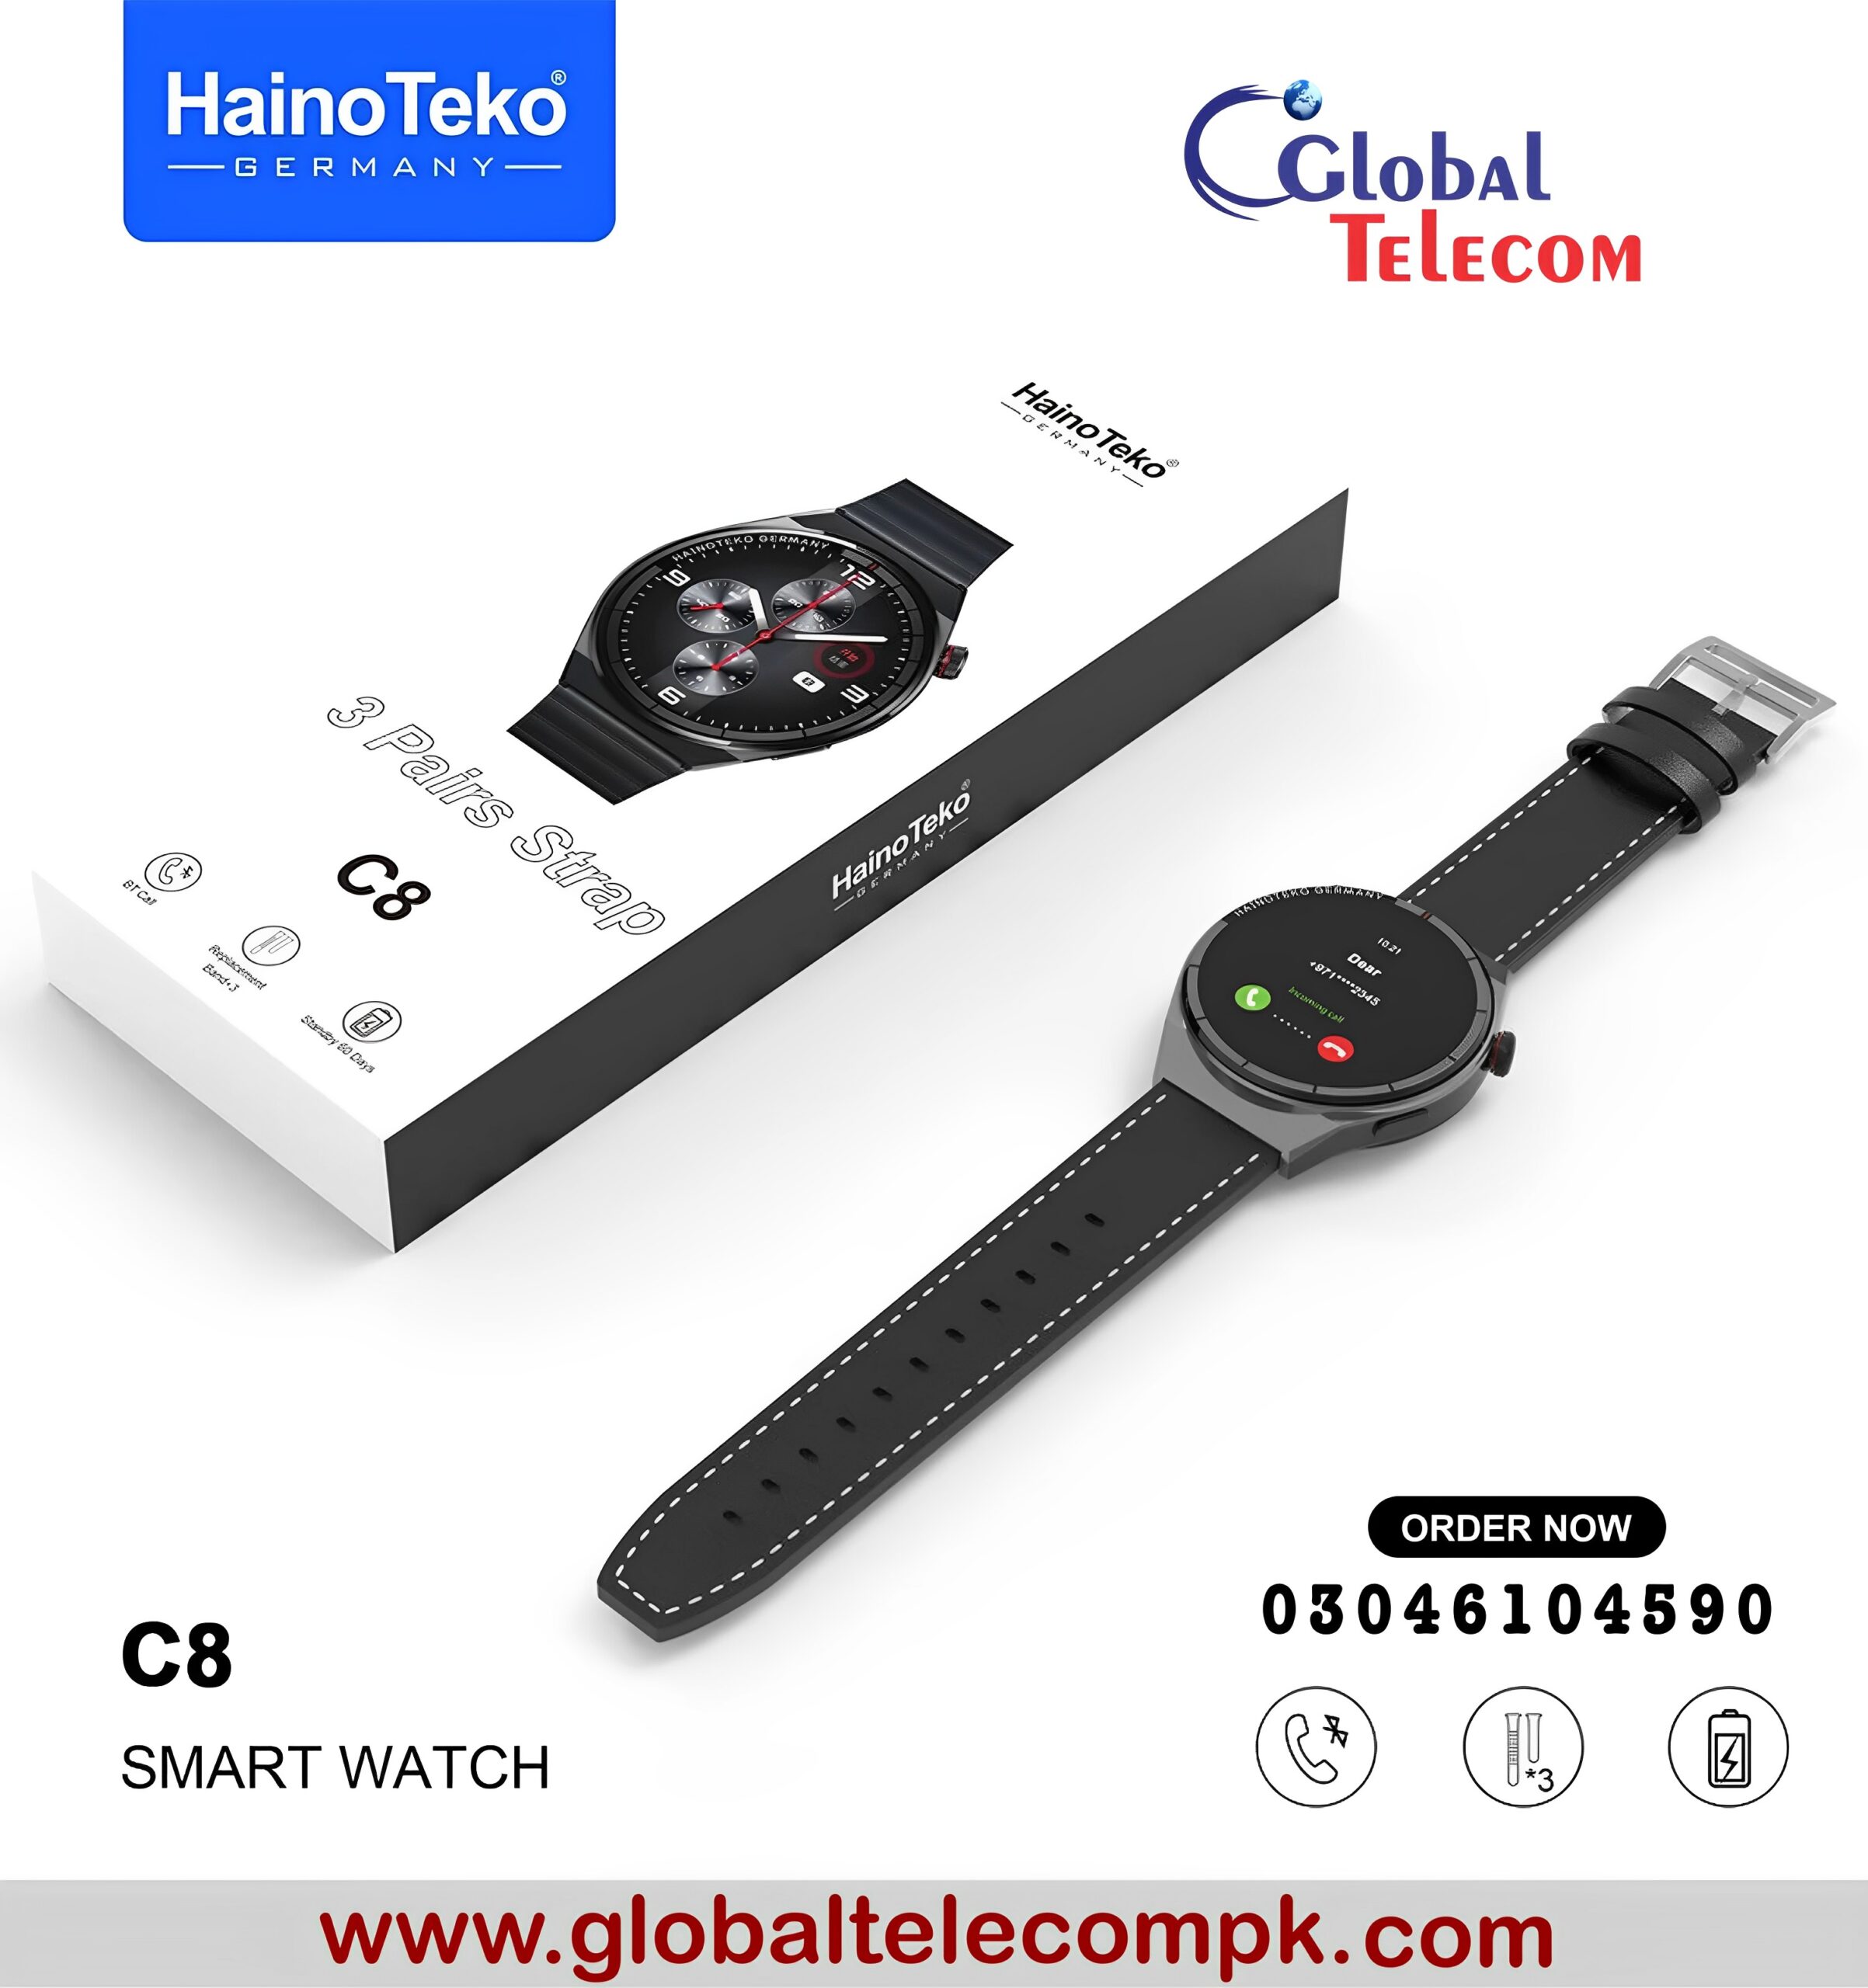 Heino Teko c8 smartwatch